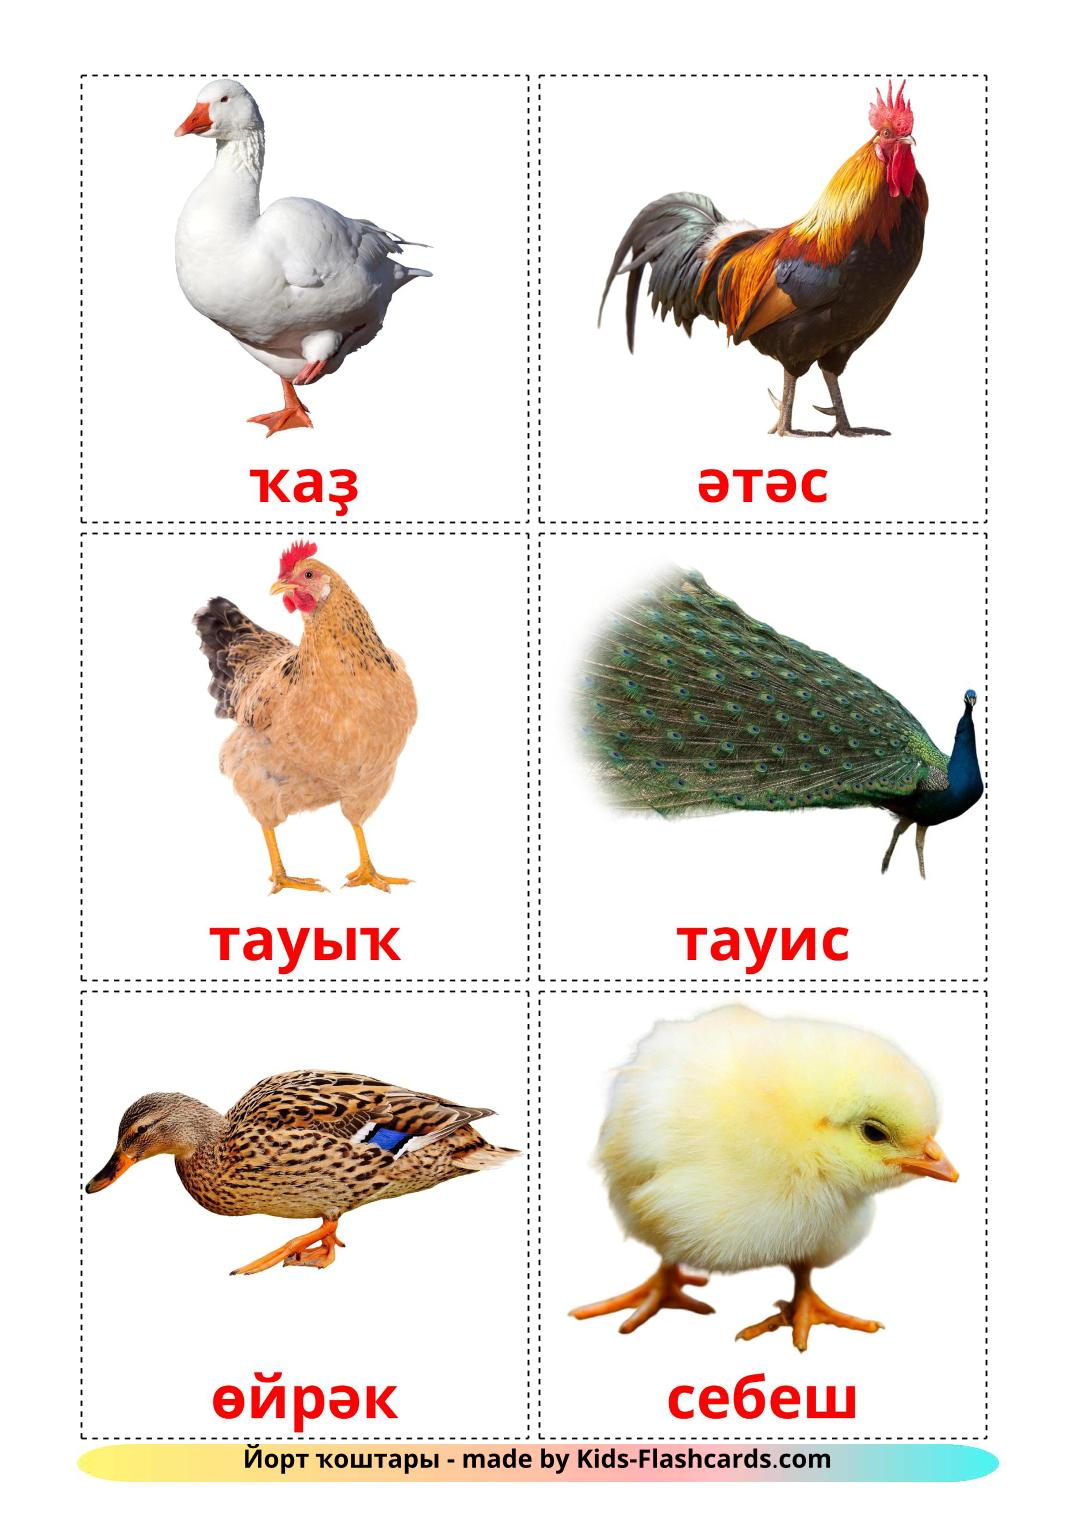 Les Oiseaux de Ferme - 11 Flashcards bashkir imprimables gratuitement